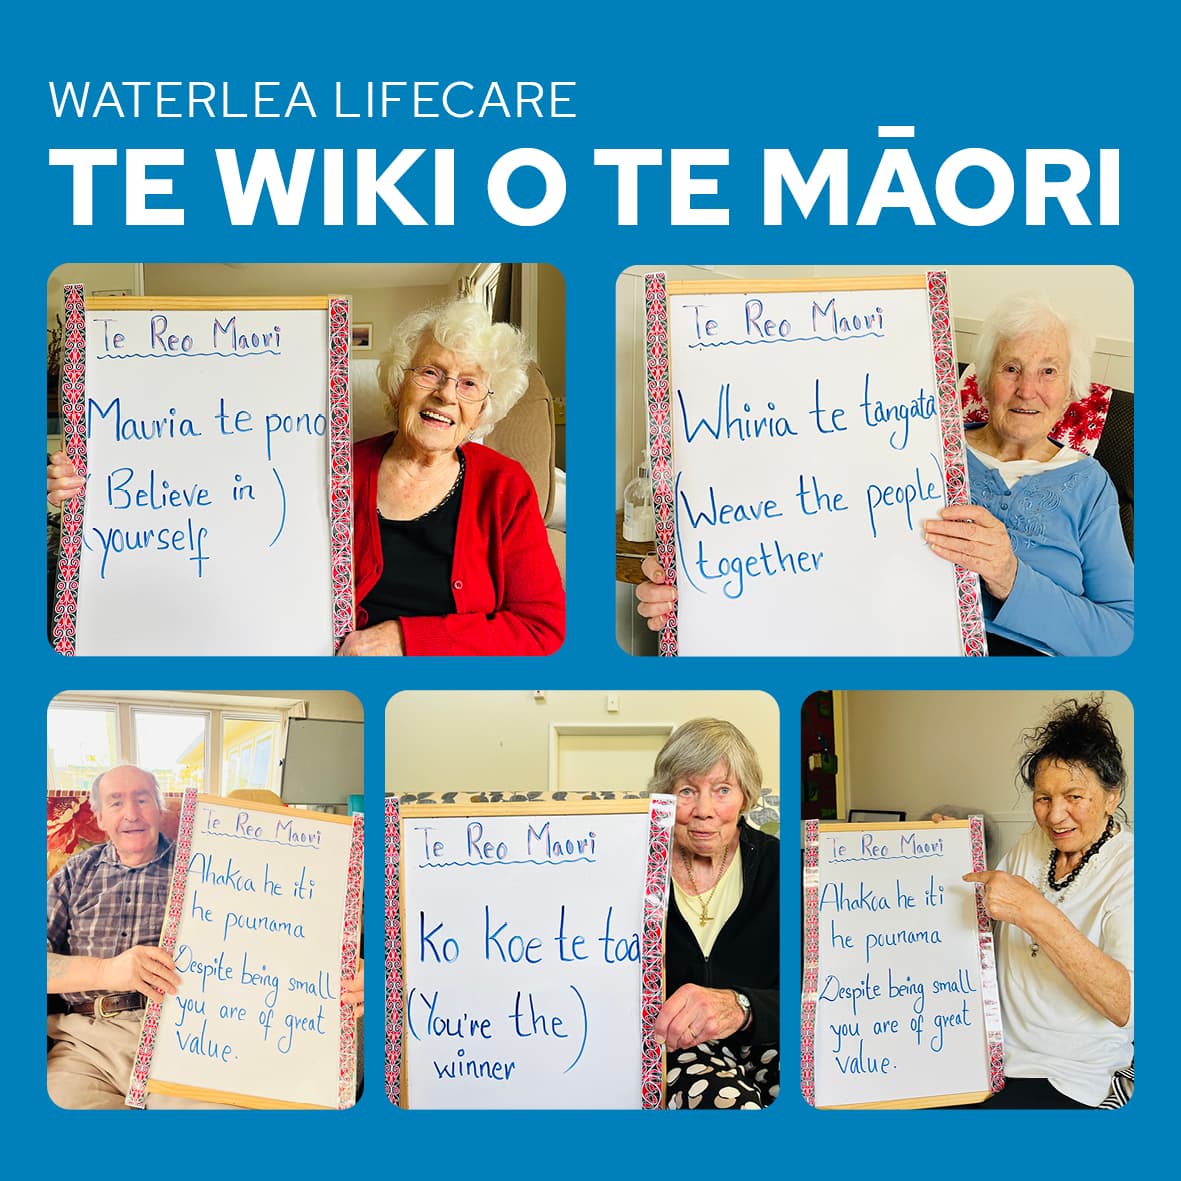 Māori language week at Waterlea